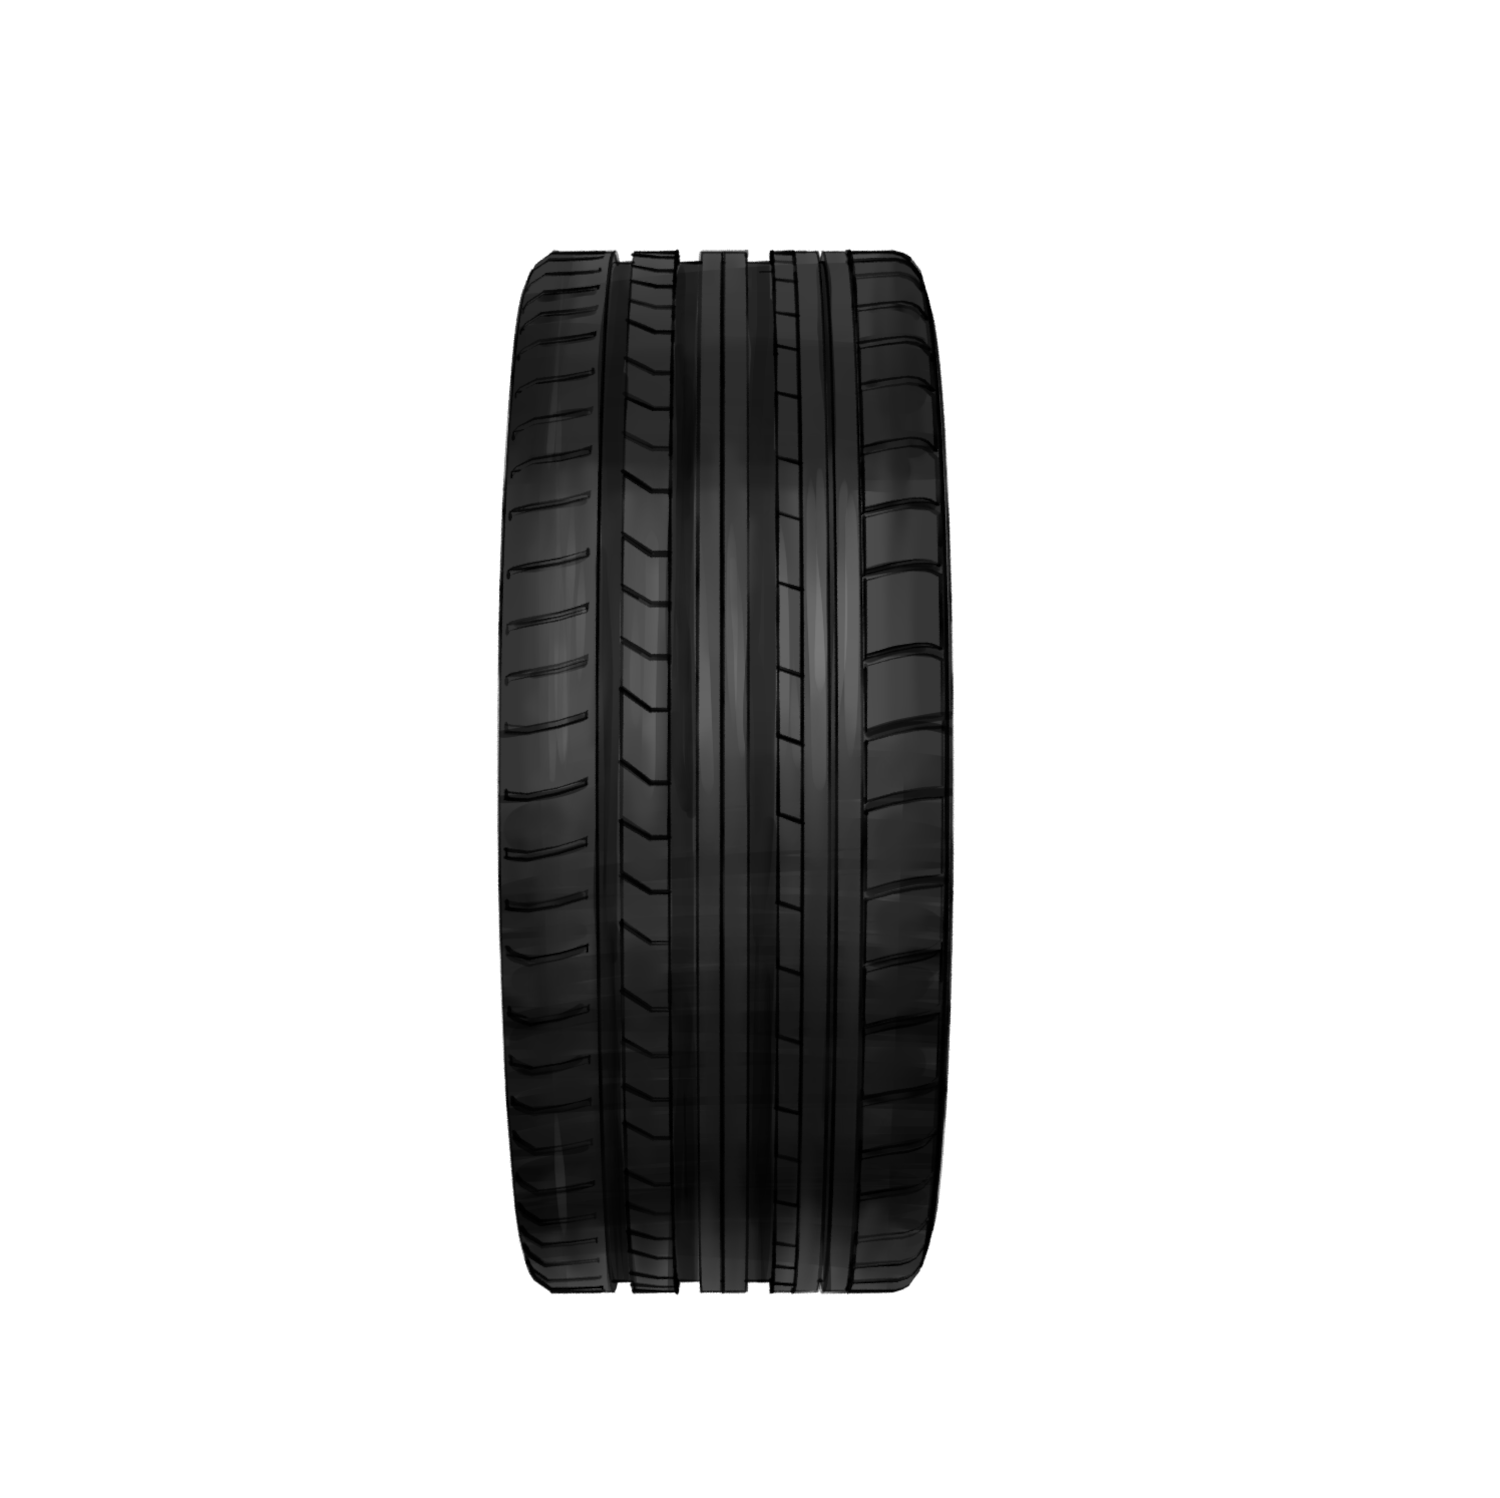  Artikelbild 2 des Artikels “Tyre Flatliner “